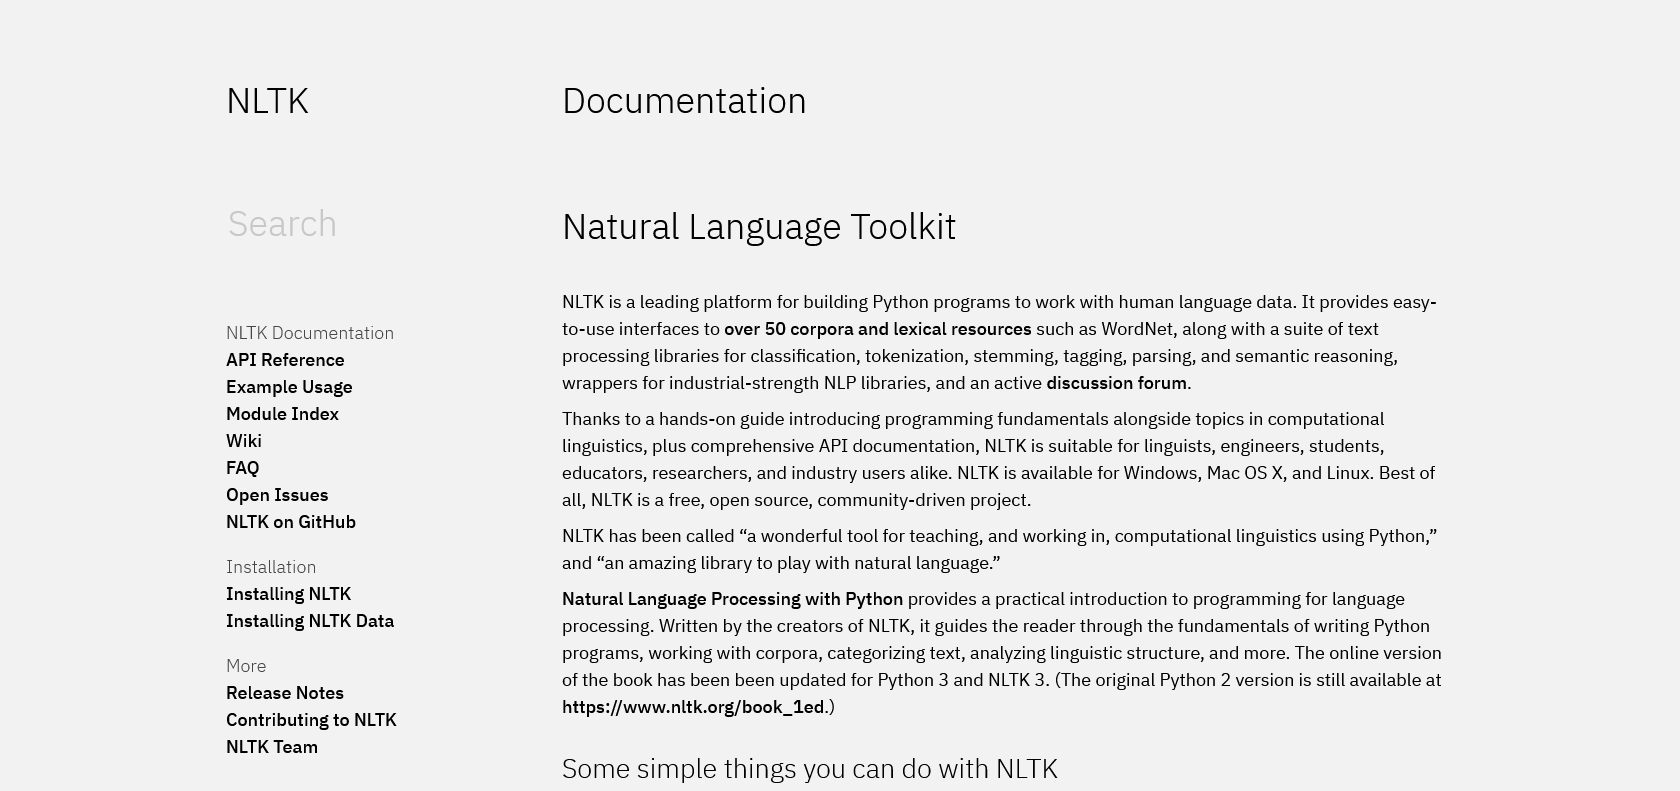 NLTK (Natural Language Toolkit)